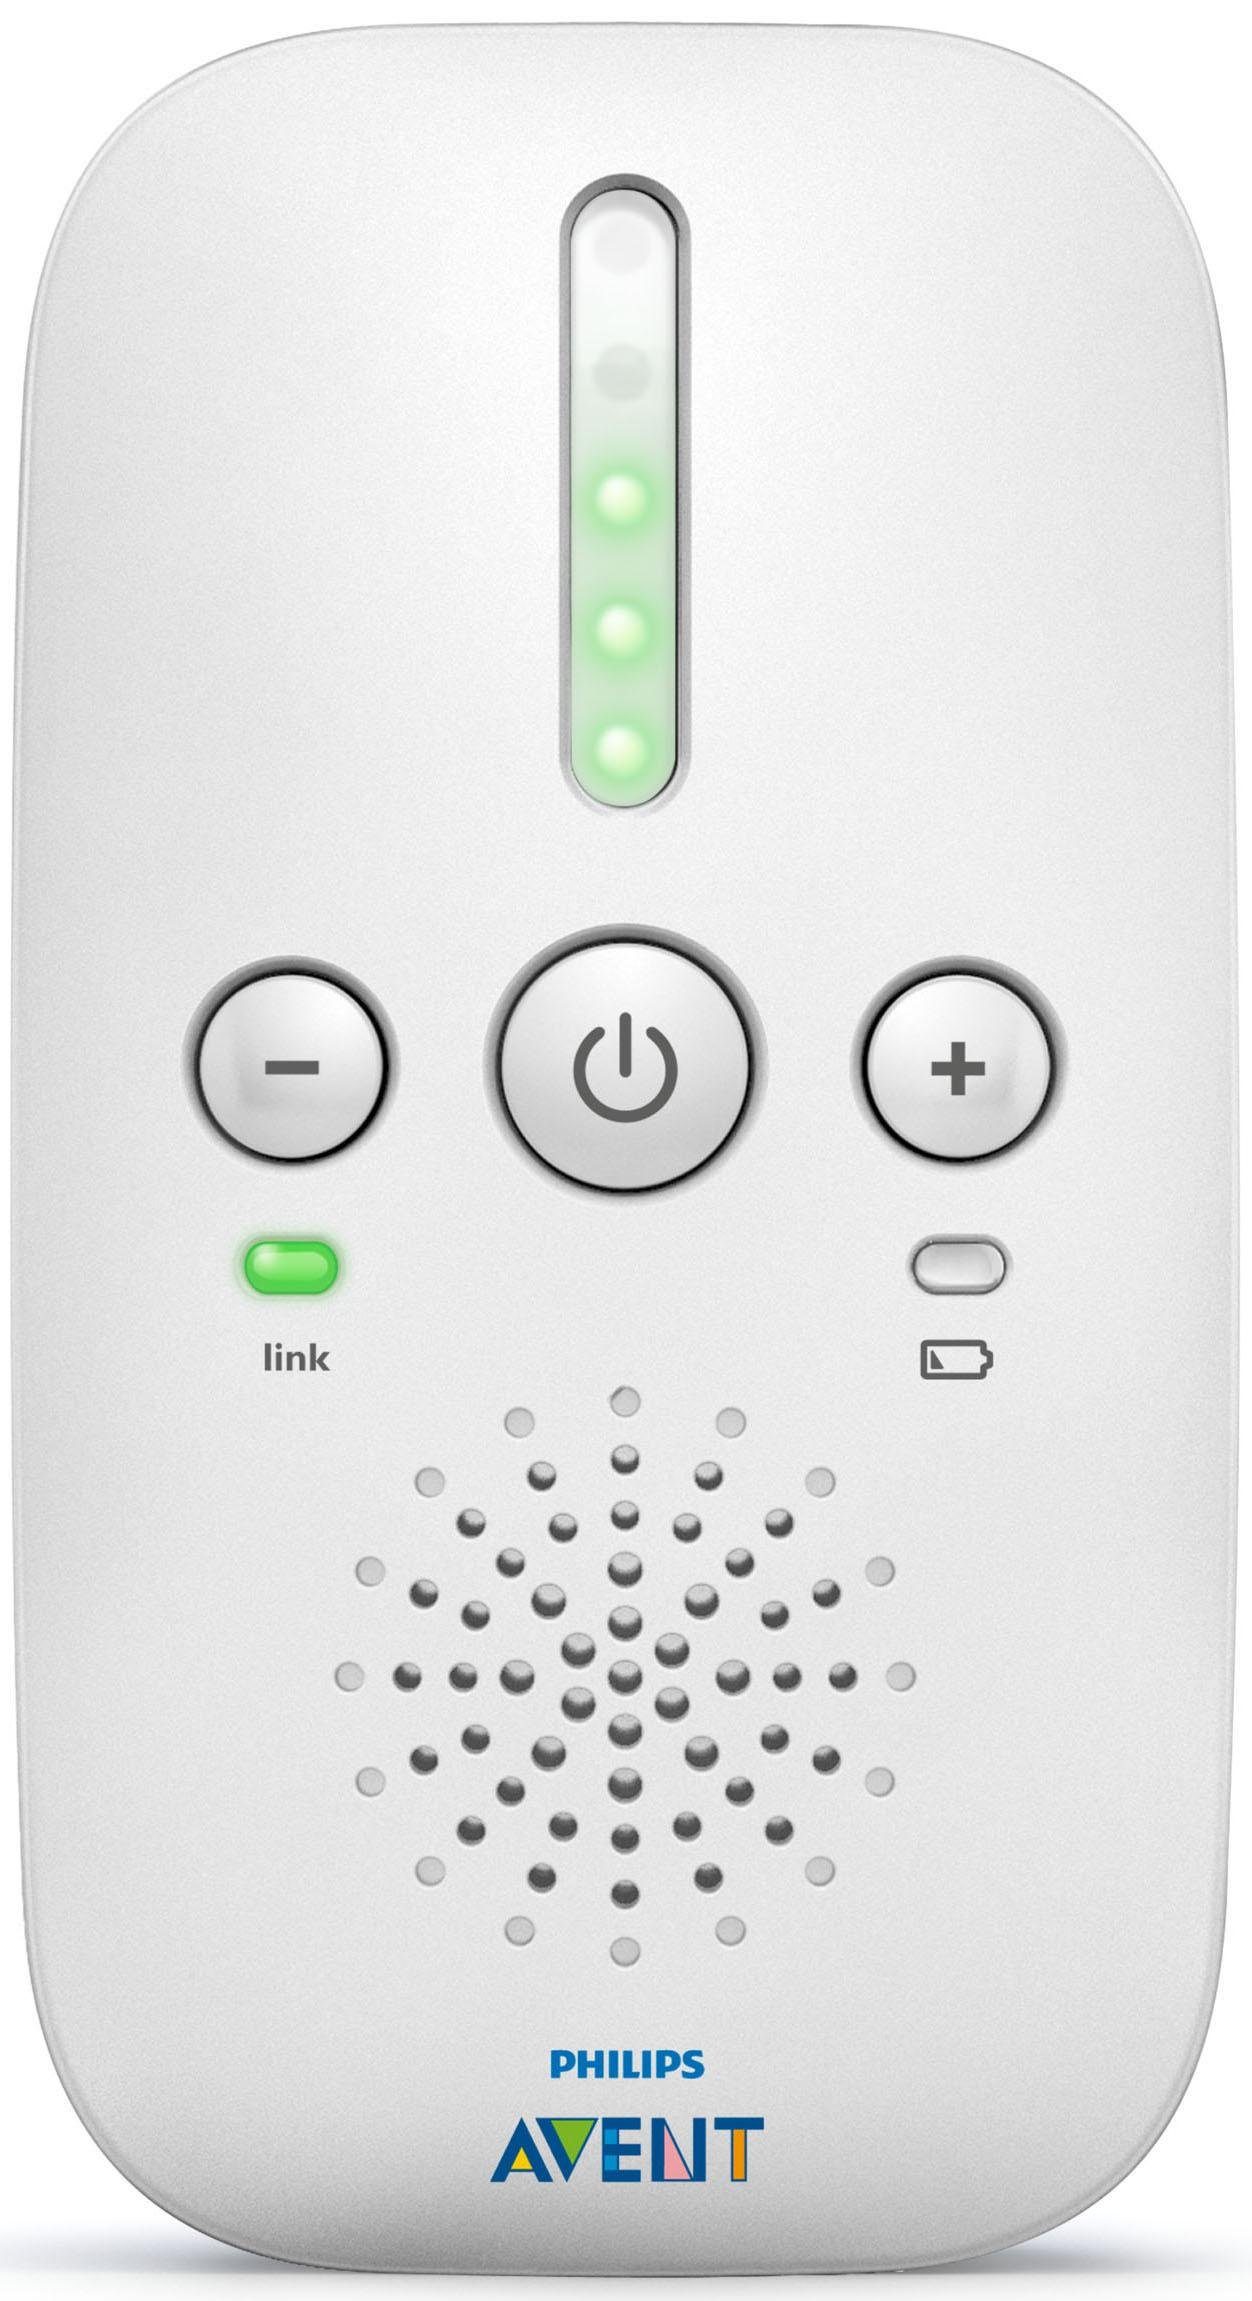 und Smart mit SCD503/26, AVENT Philips ECO-Modus Babyphone Nachtlicht